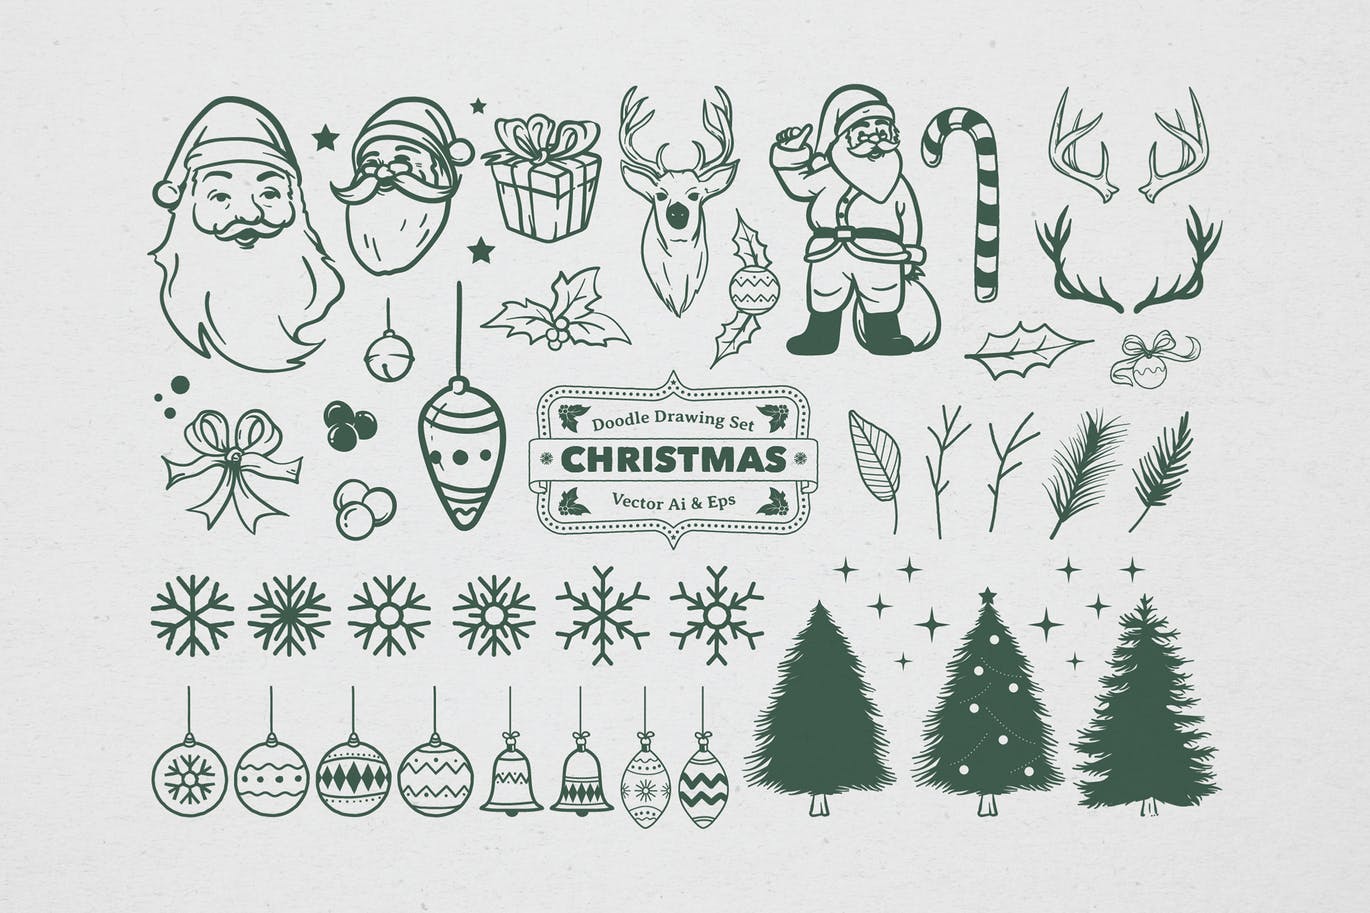 圣诞节主题矢量手绘设计素材[黑白风格] Christmas Drawing Set插图